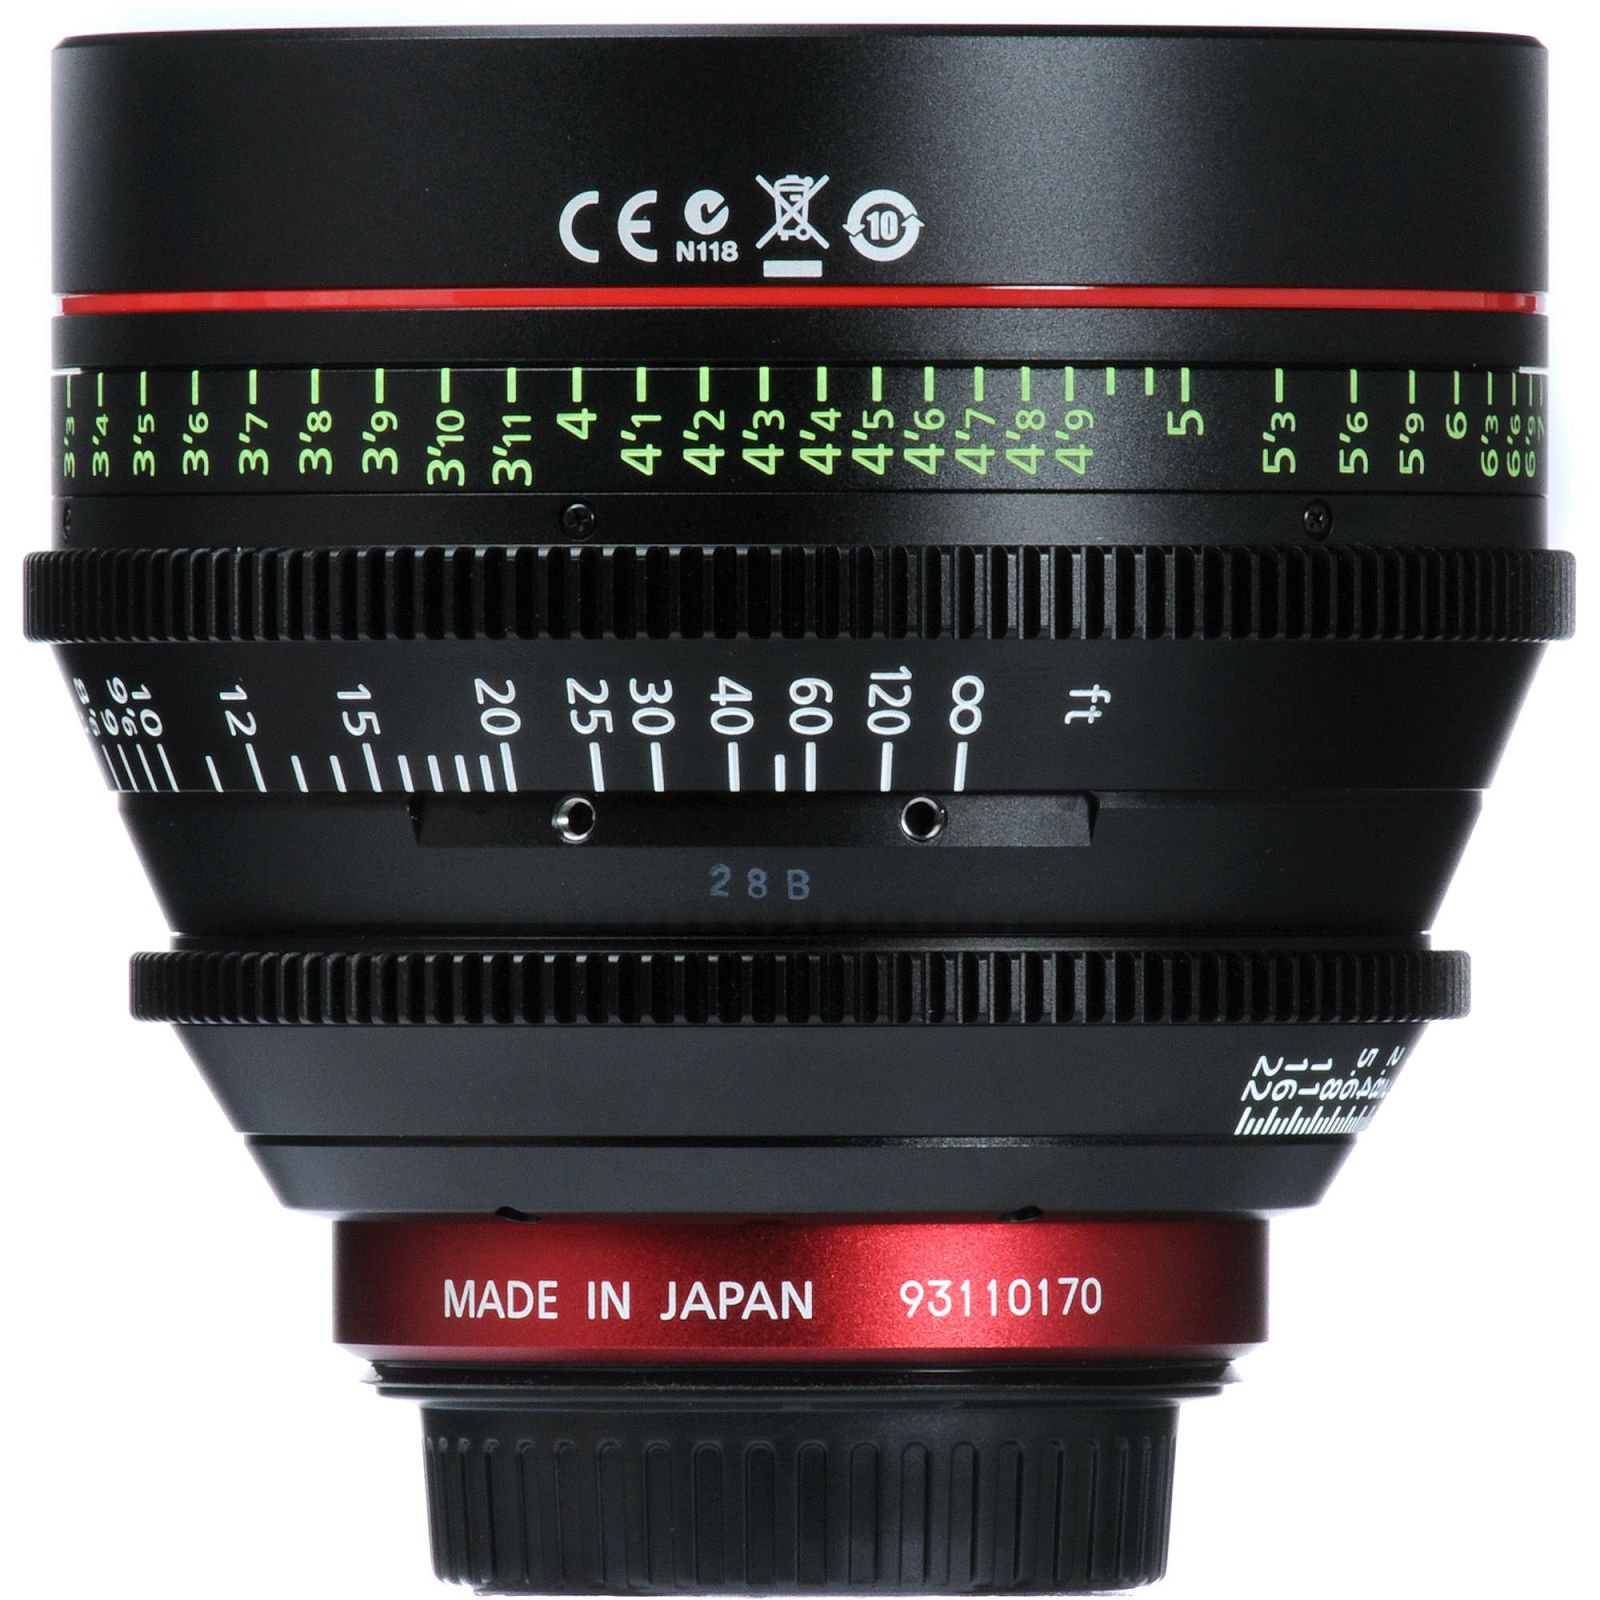 Canon Cine Lens KIT CN-E 24/85/135 Bundle Primes lens set (CN-E 24mm T1.5 L F + CN-E 85mm L F + CN-E 135mm T2.2 L F) (8326B007AA)